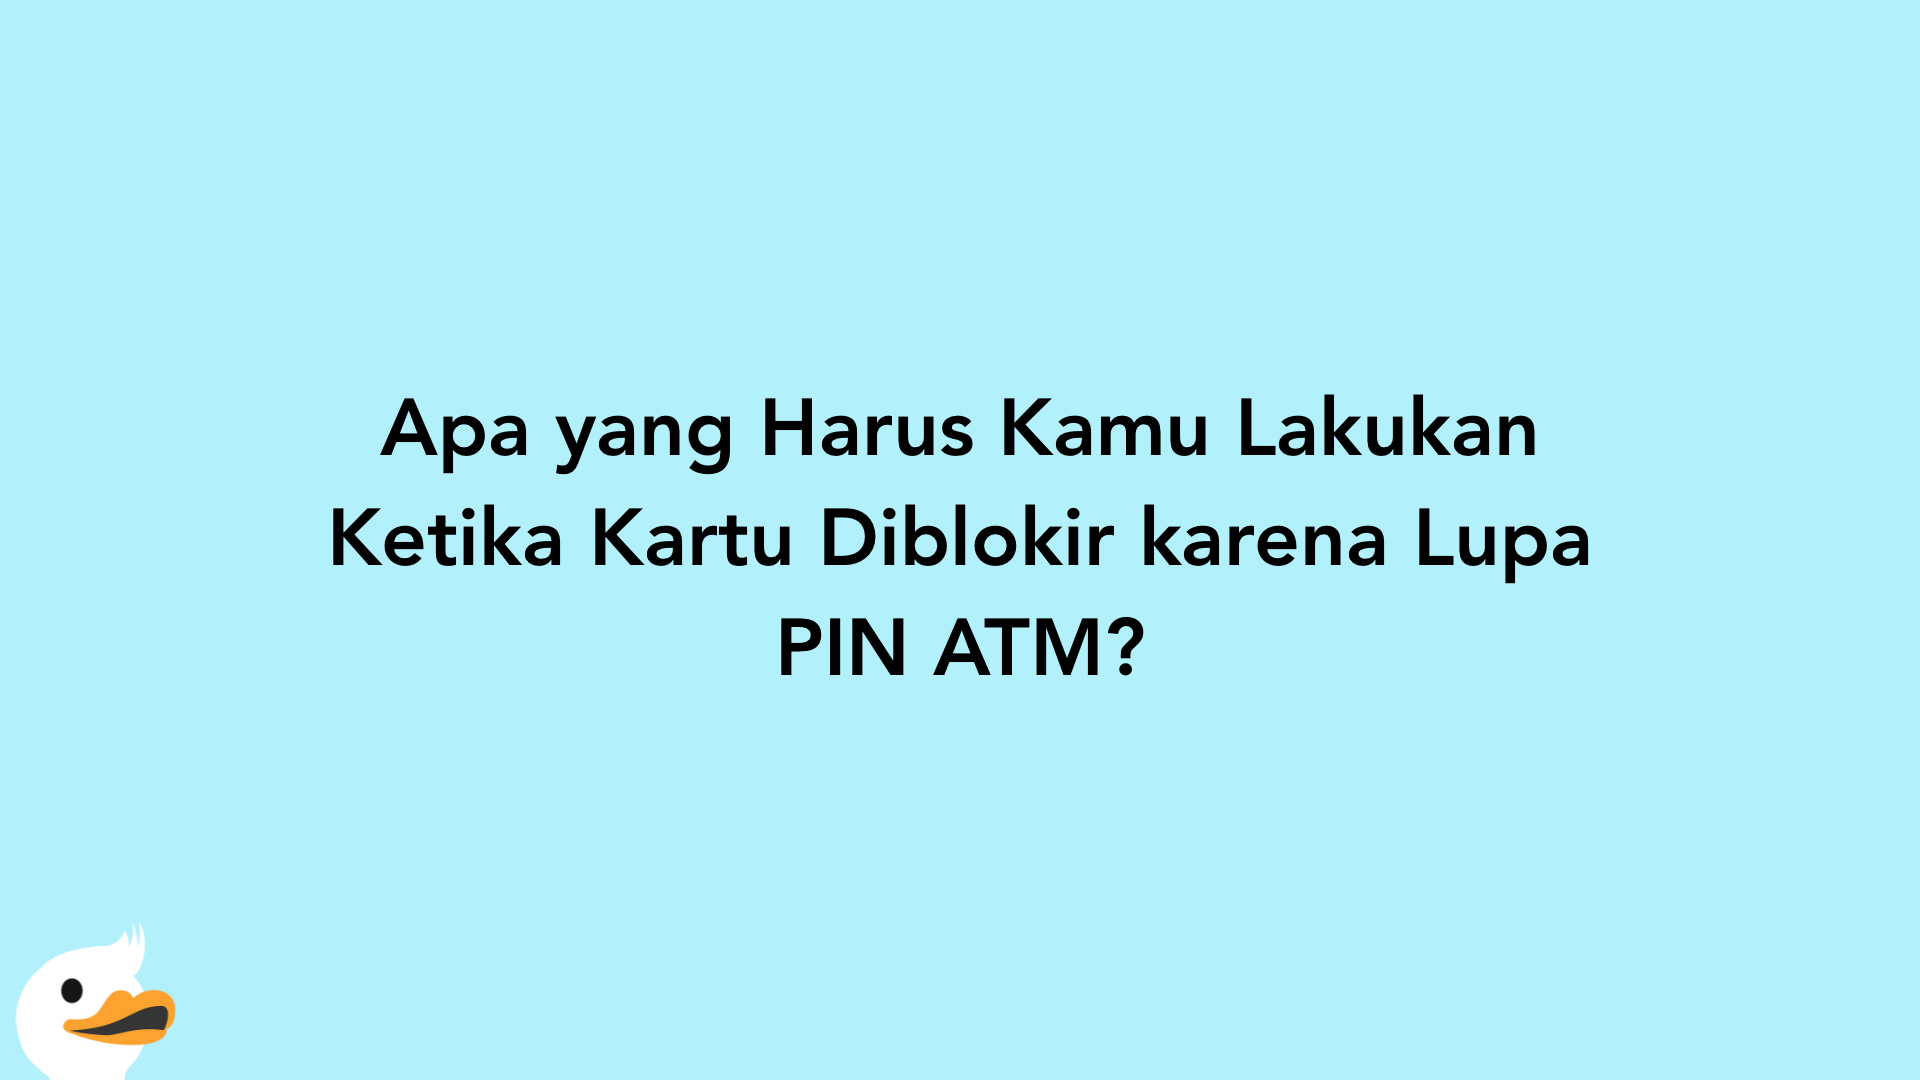 Apa yang Harus Kamu Lakukan Ketika Kartu Diblokir karena Lupa PIN ATM?